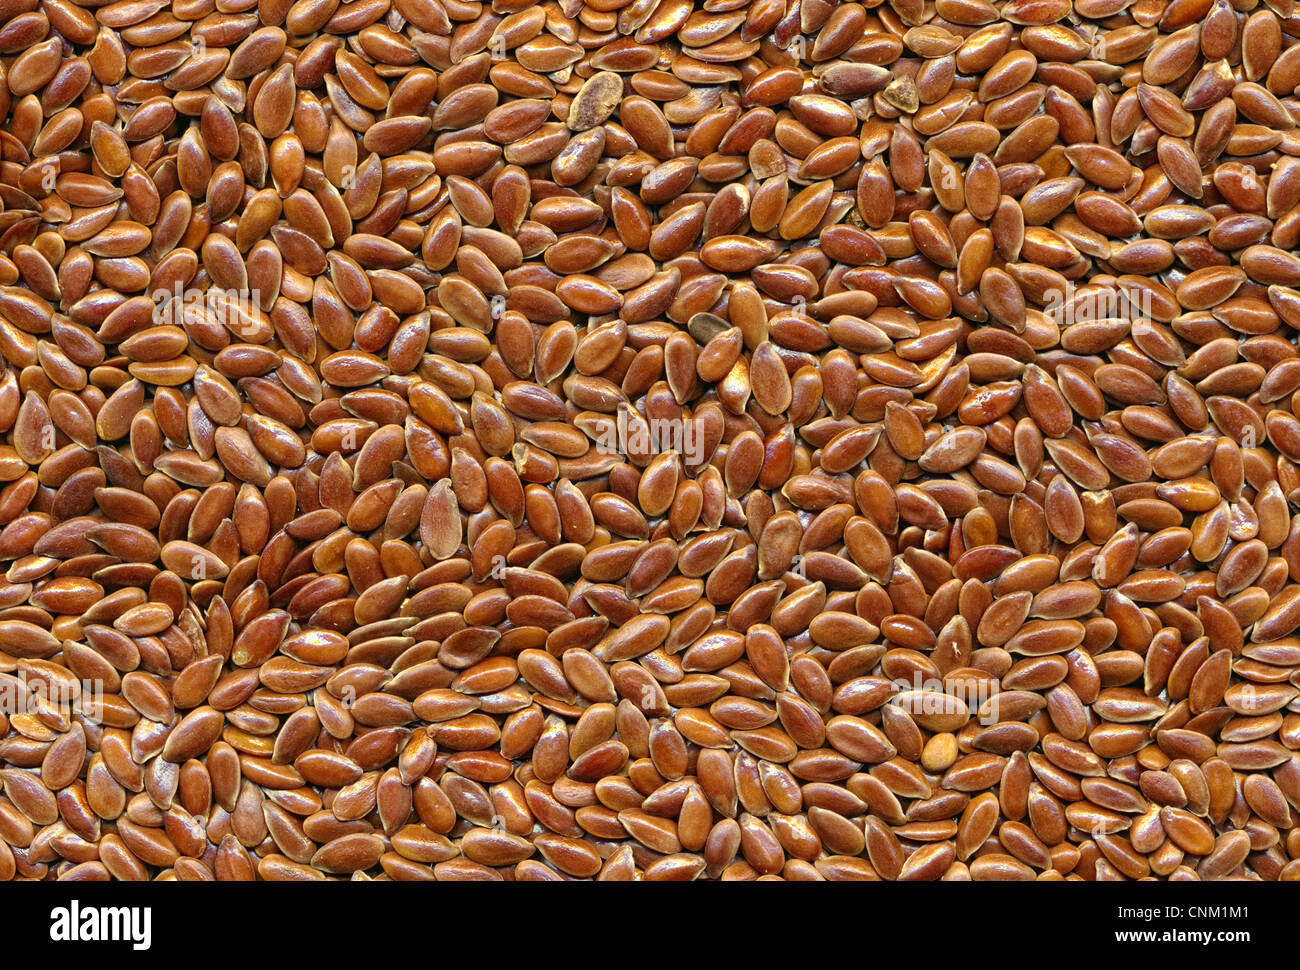 Brown flax seed, Leinsaat, brauner Leinsamen, Samen des Flachses (Gemeiner Lein, Linum usitatissimum) Stock Photo